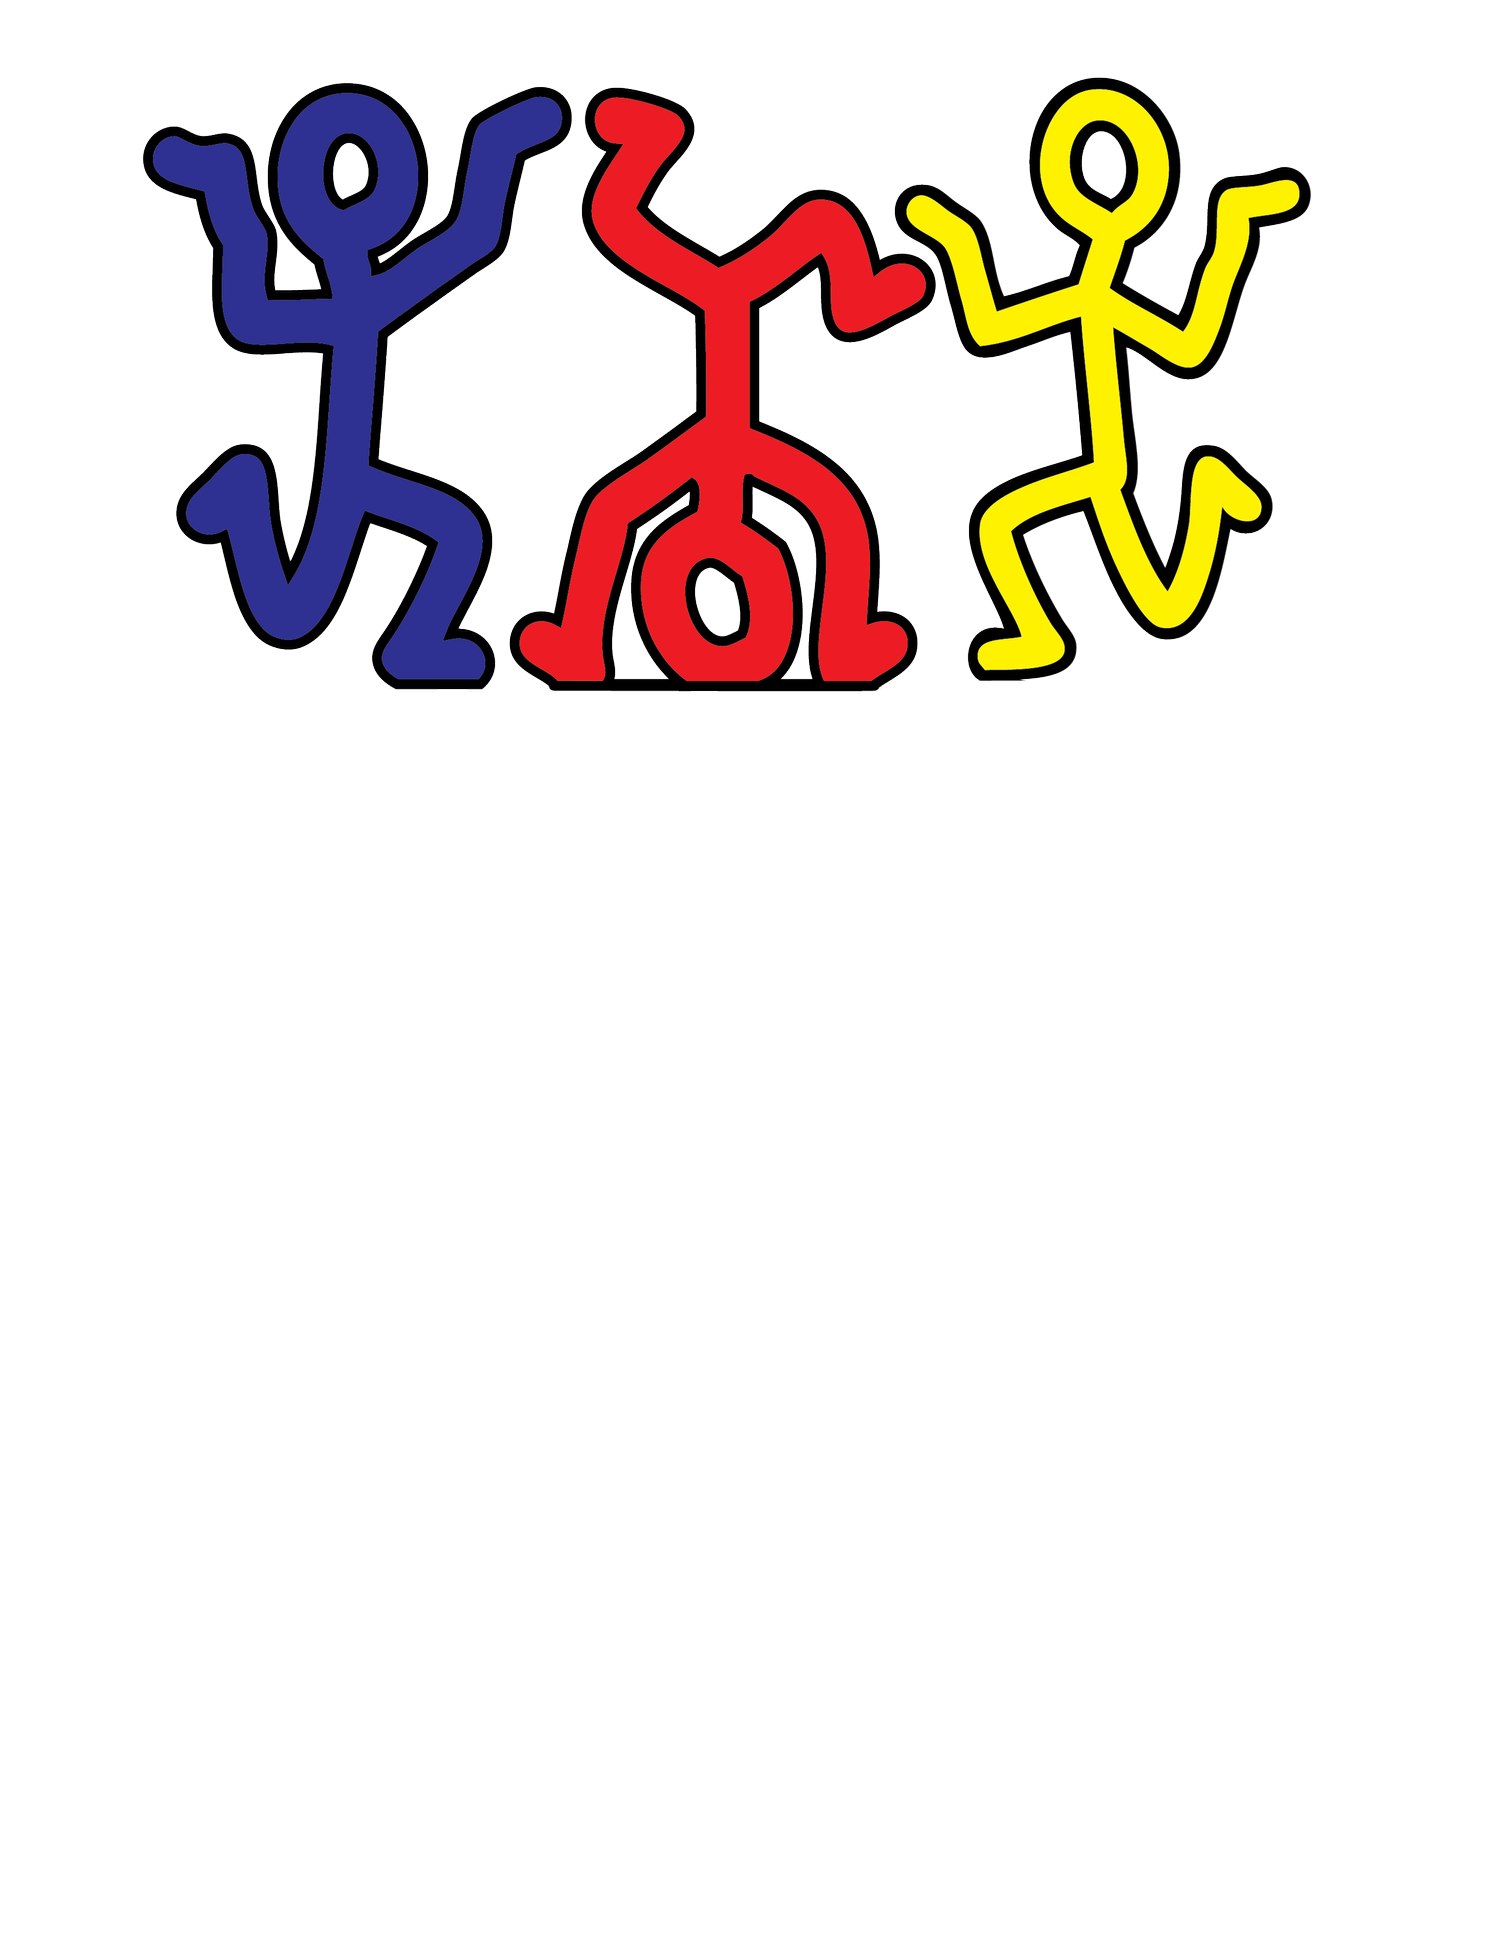 Little Black Pearl